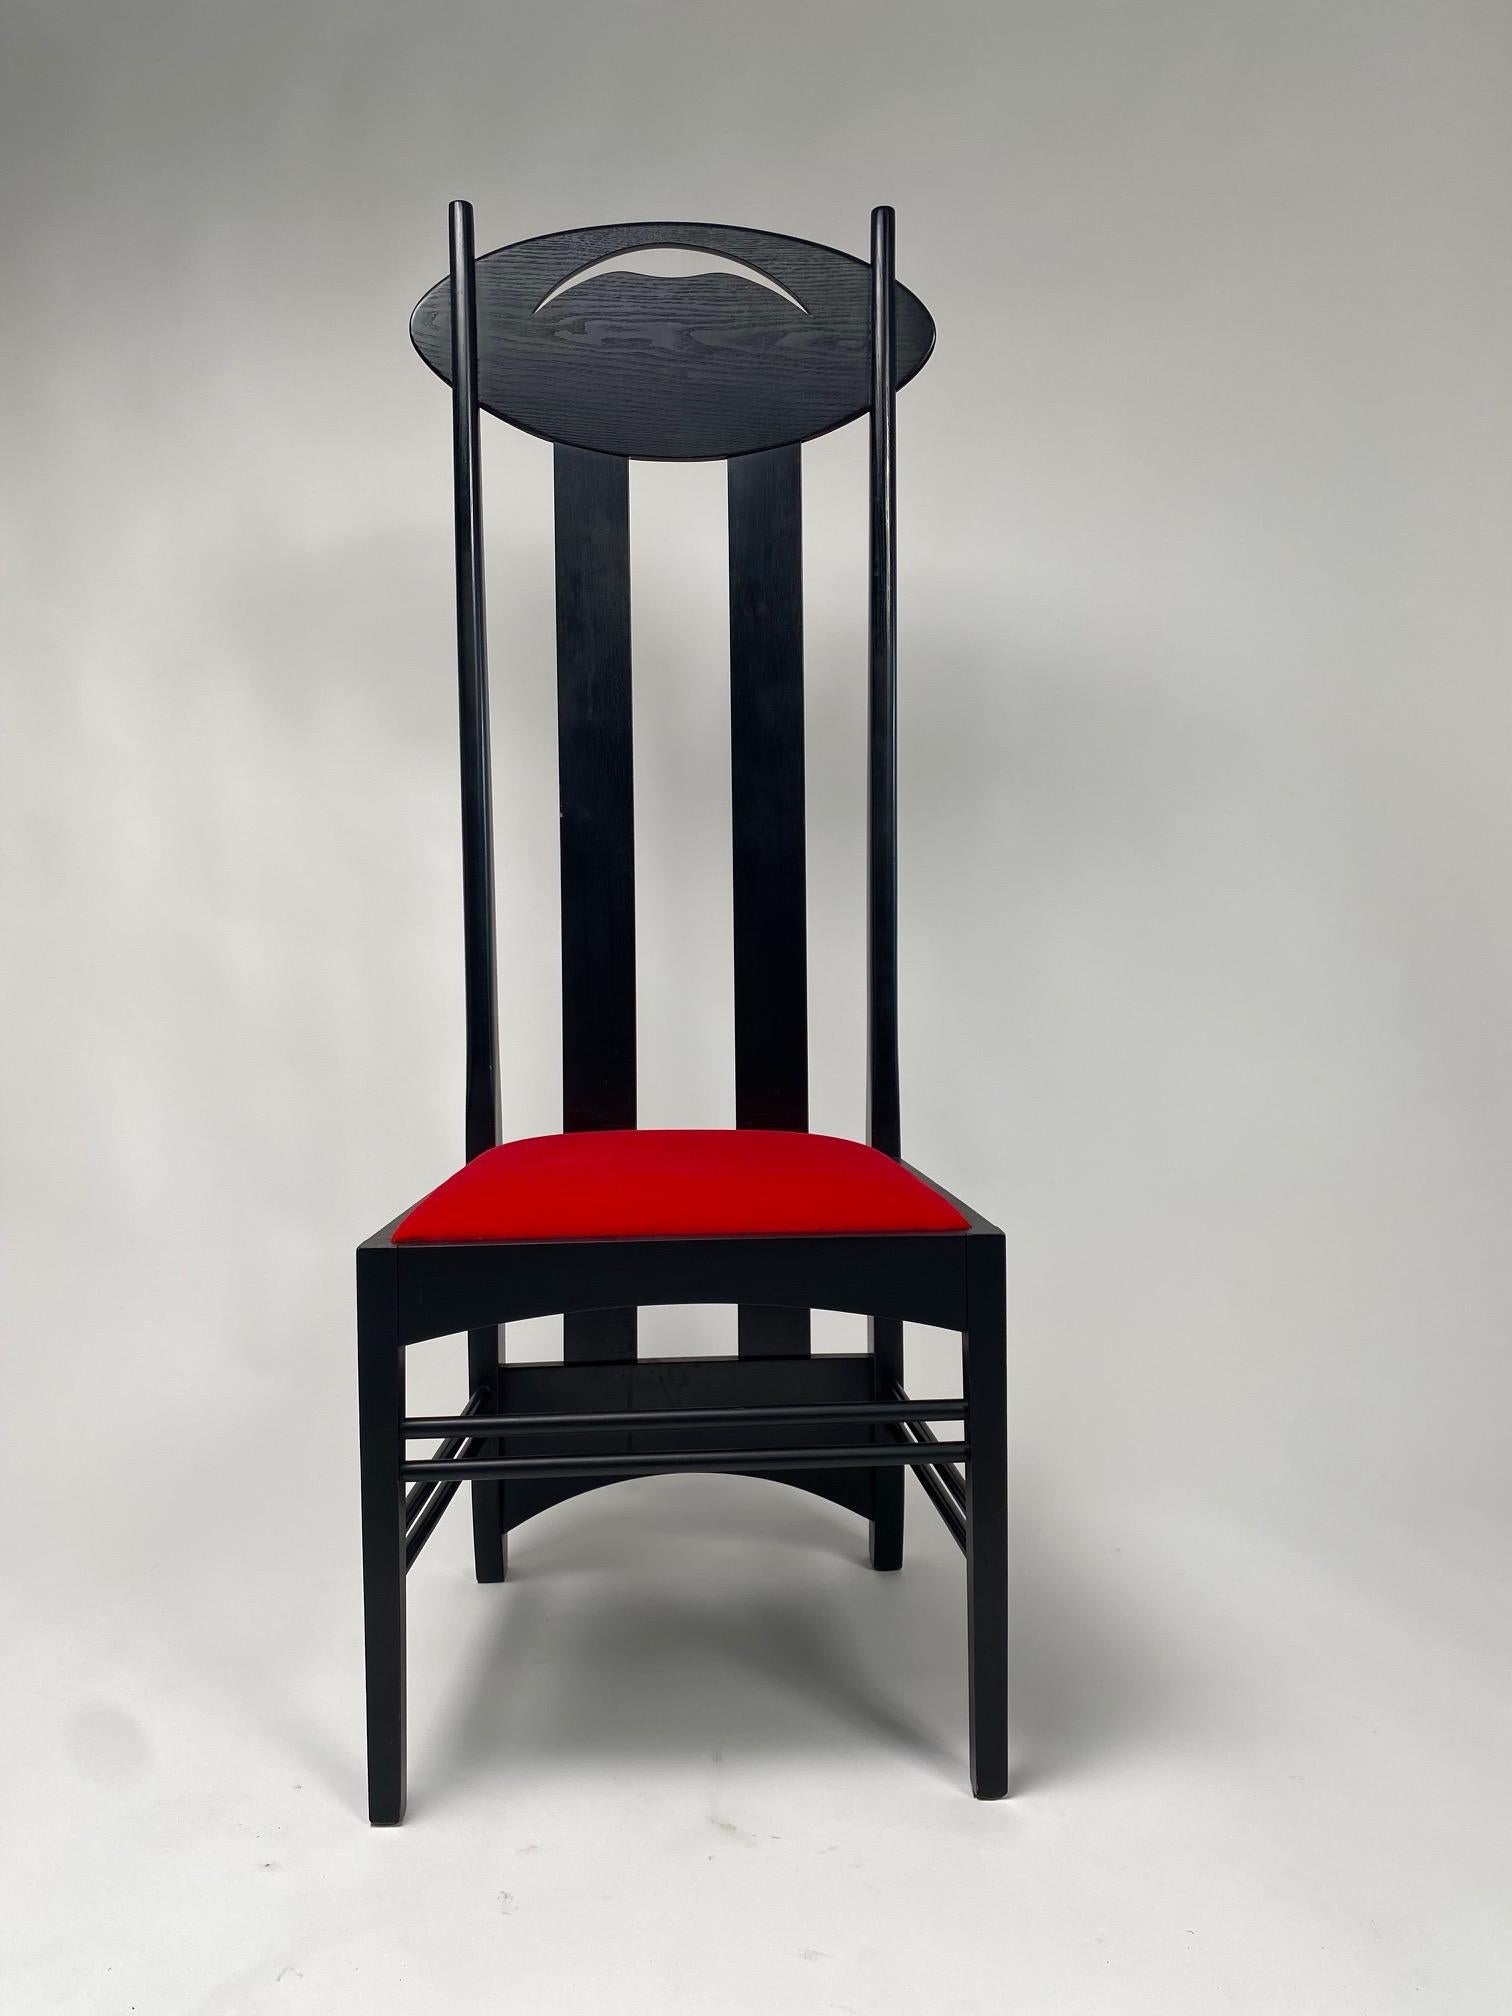 Ein Paar Argyle-Stühle von Charles Rennie Mackintosh für Atelier International, entworfen 1897 und ausgestellt auf der Achten Sezessionsausstellung in Wien, Österreich 1900,

Er ist einer der ikonischsten Stühle des berühmten schottischen